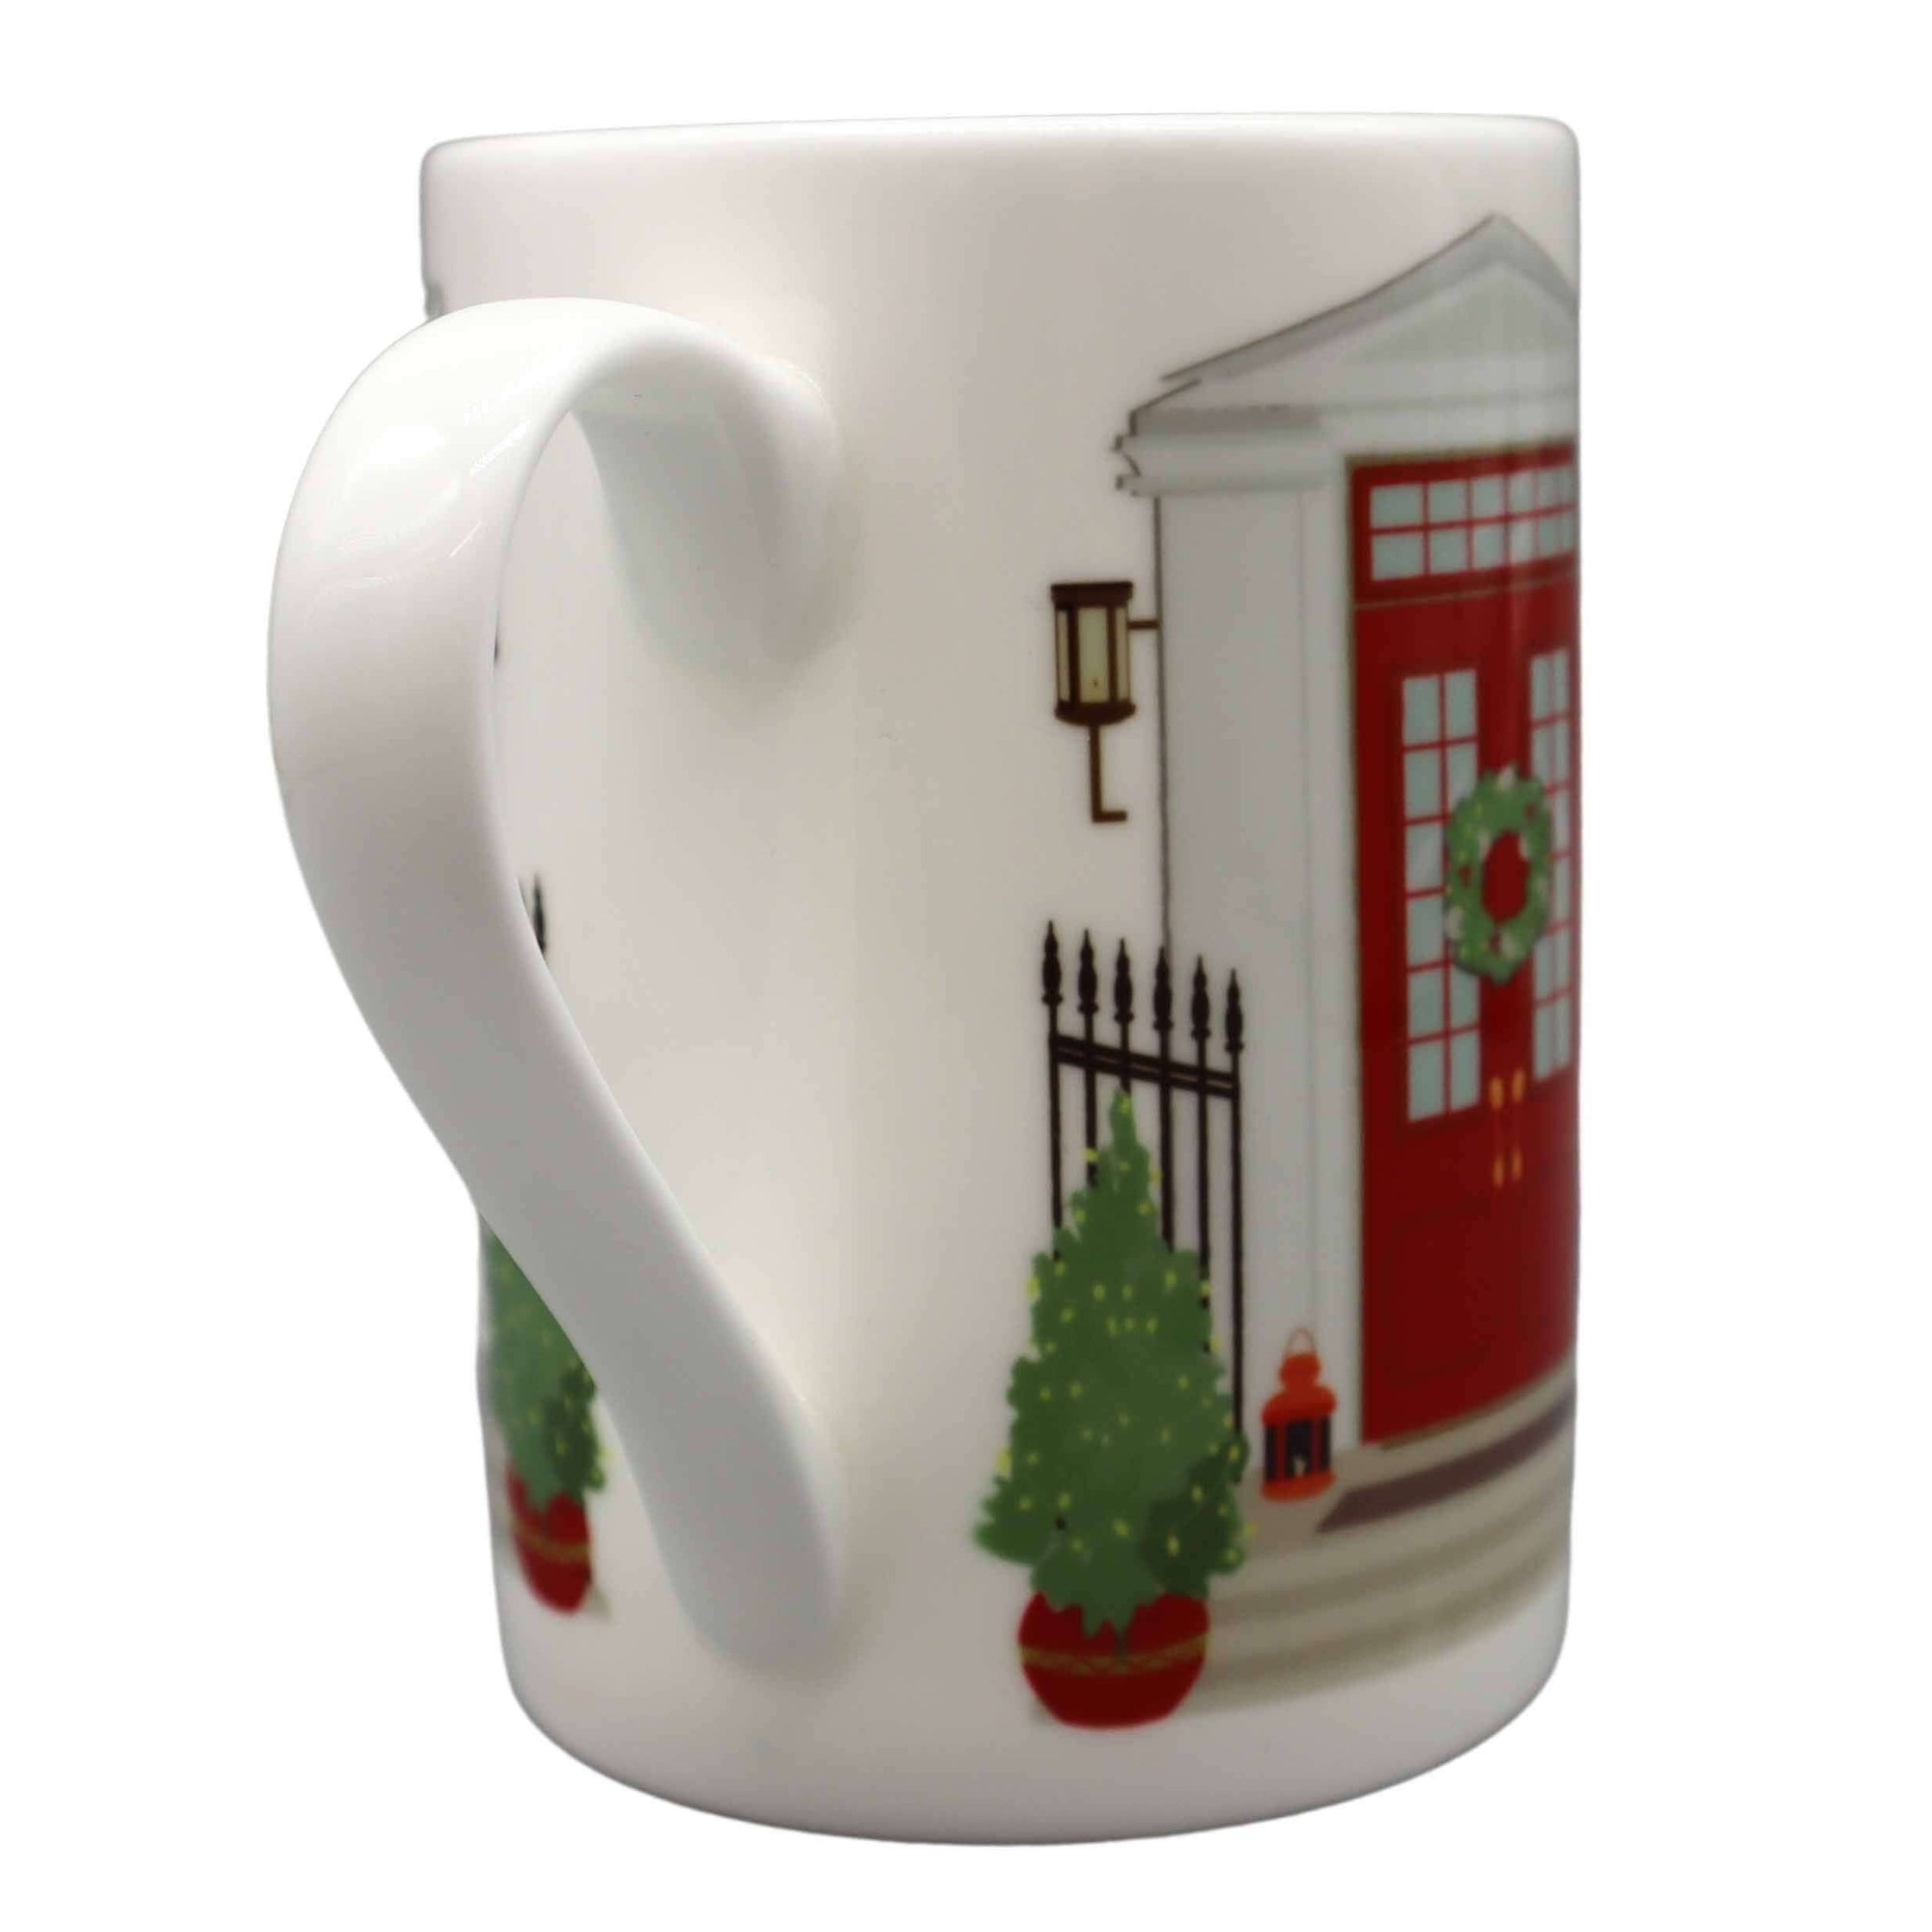 Three Doors Down "Christmas" Mug Mugs Mustard and Gray Ltd Shropshire UK